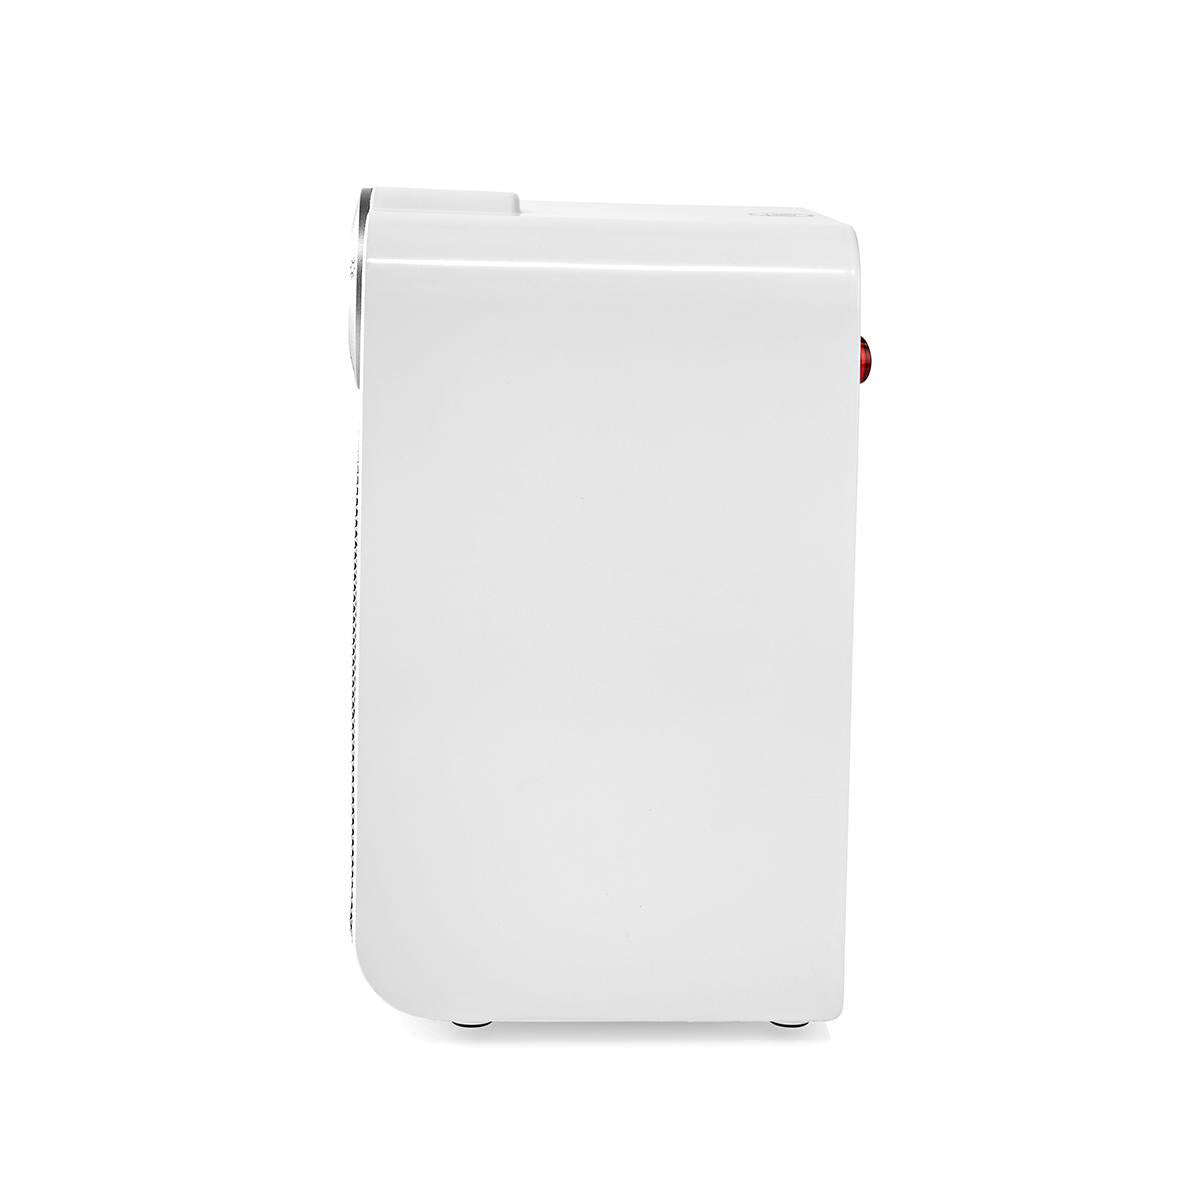 Aquecedor com ventilador Nedis SmartLife Wifi | Compacto | 1800 W | 3 Definições de calor | Oscilação | Visor